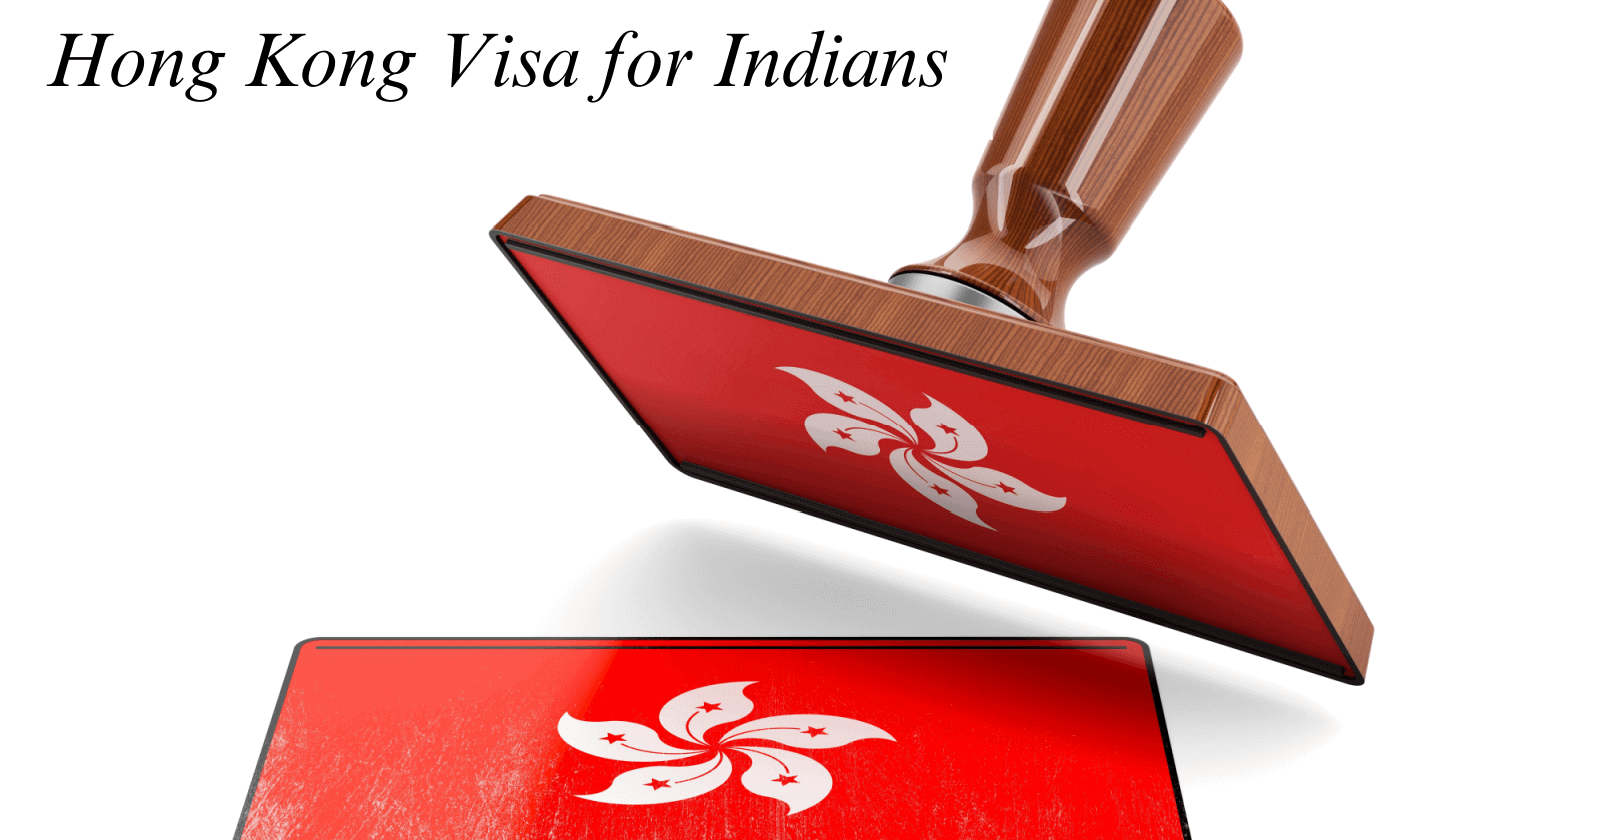 Hong Kong visa for Indians